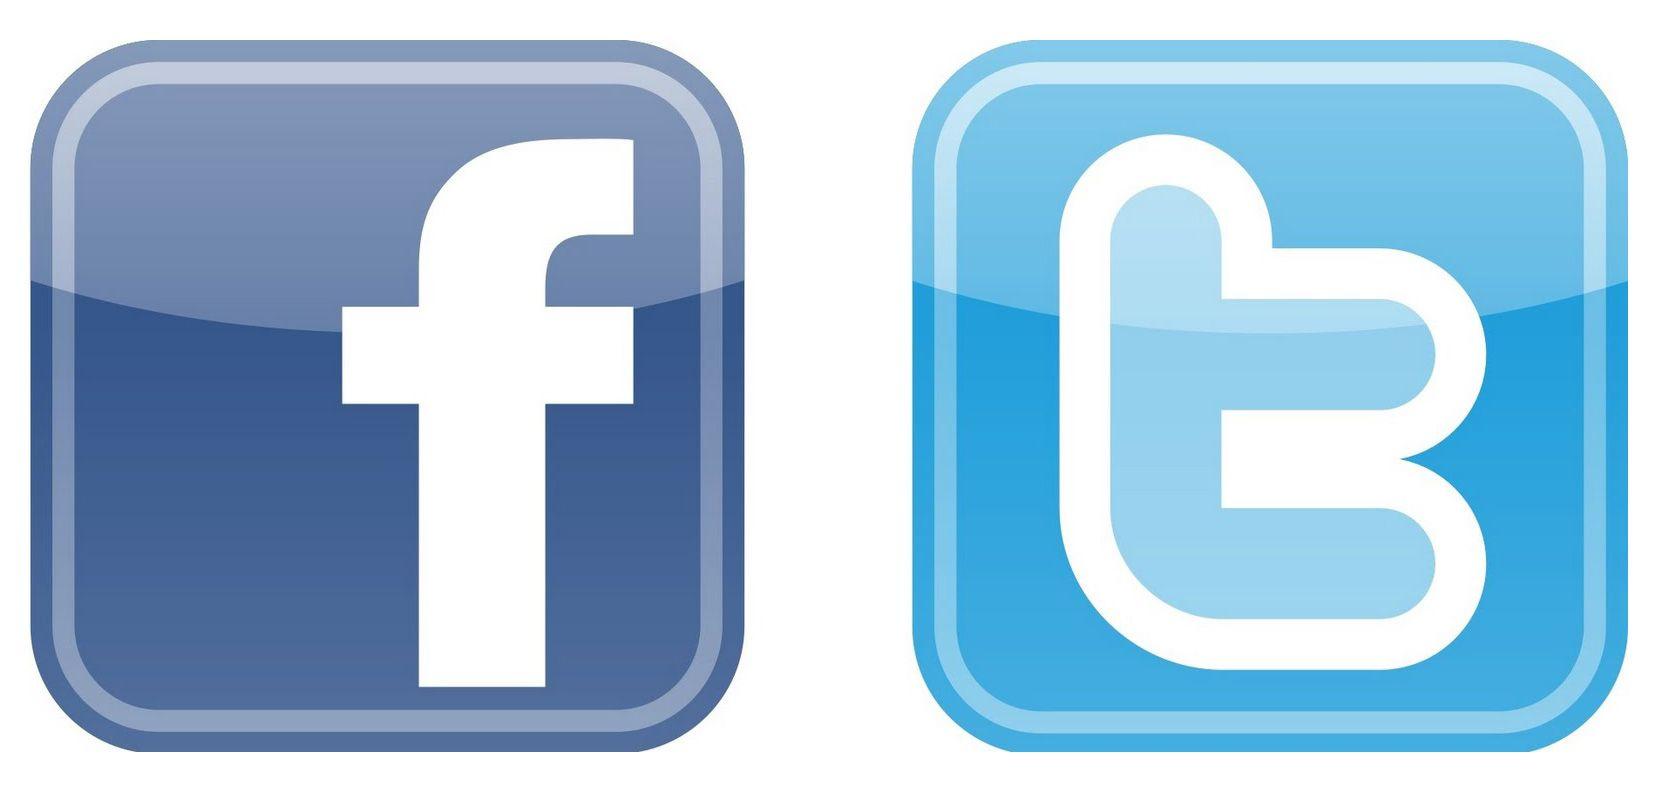 Circular Facebook Logo - Free Facebook Logo Icon 18767. Download Facebook Logo Icon